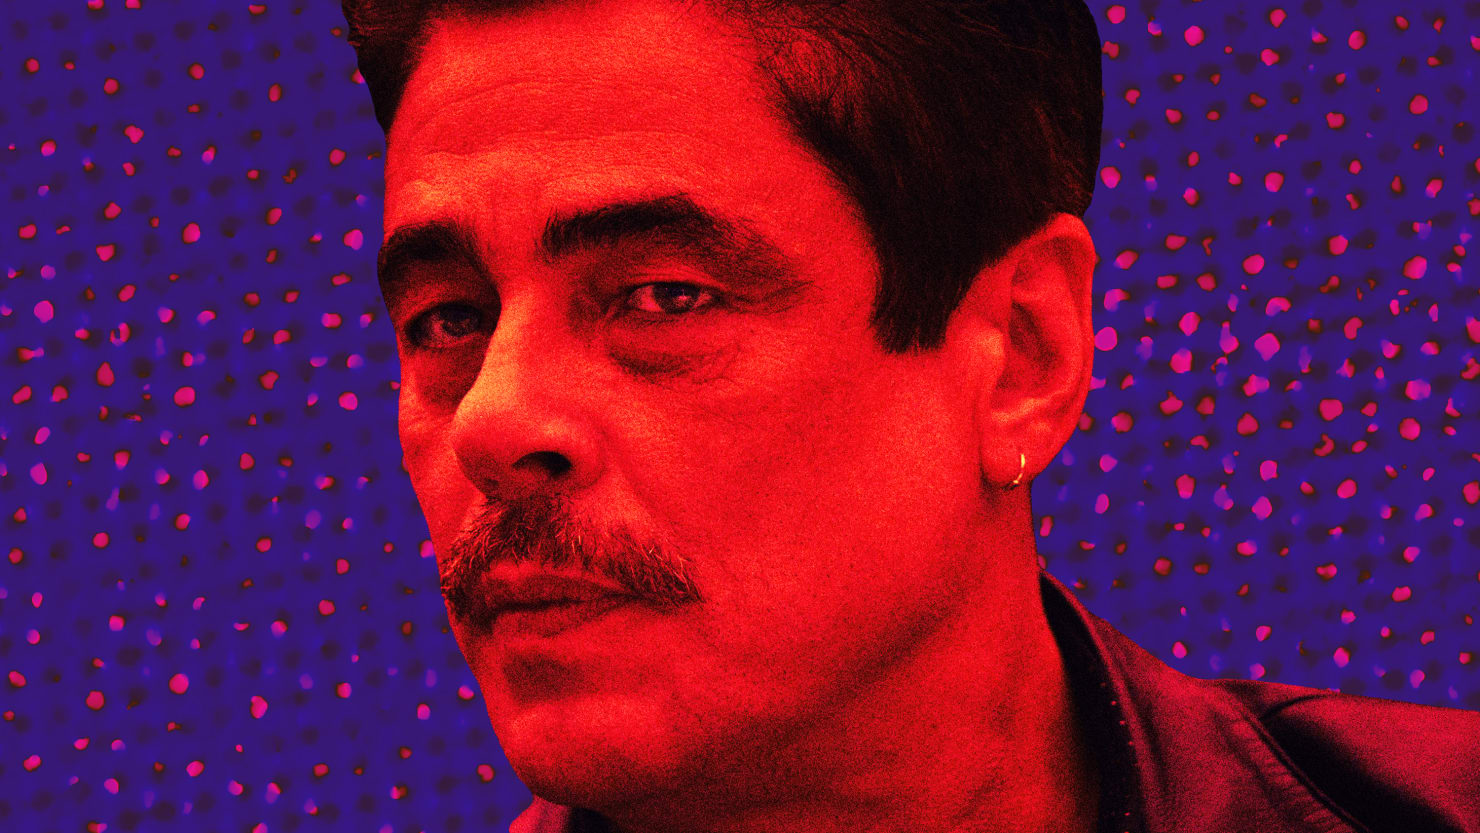 Reptile' Review: Benicio del Toro in a Grisly Homicide Thriller